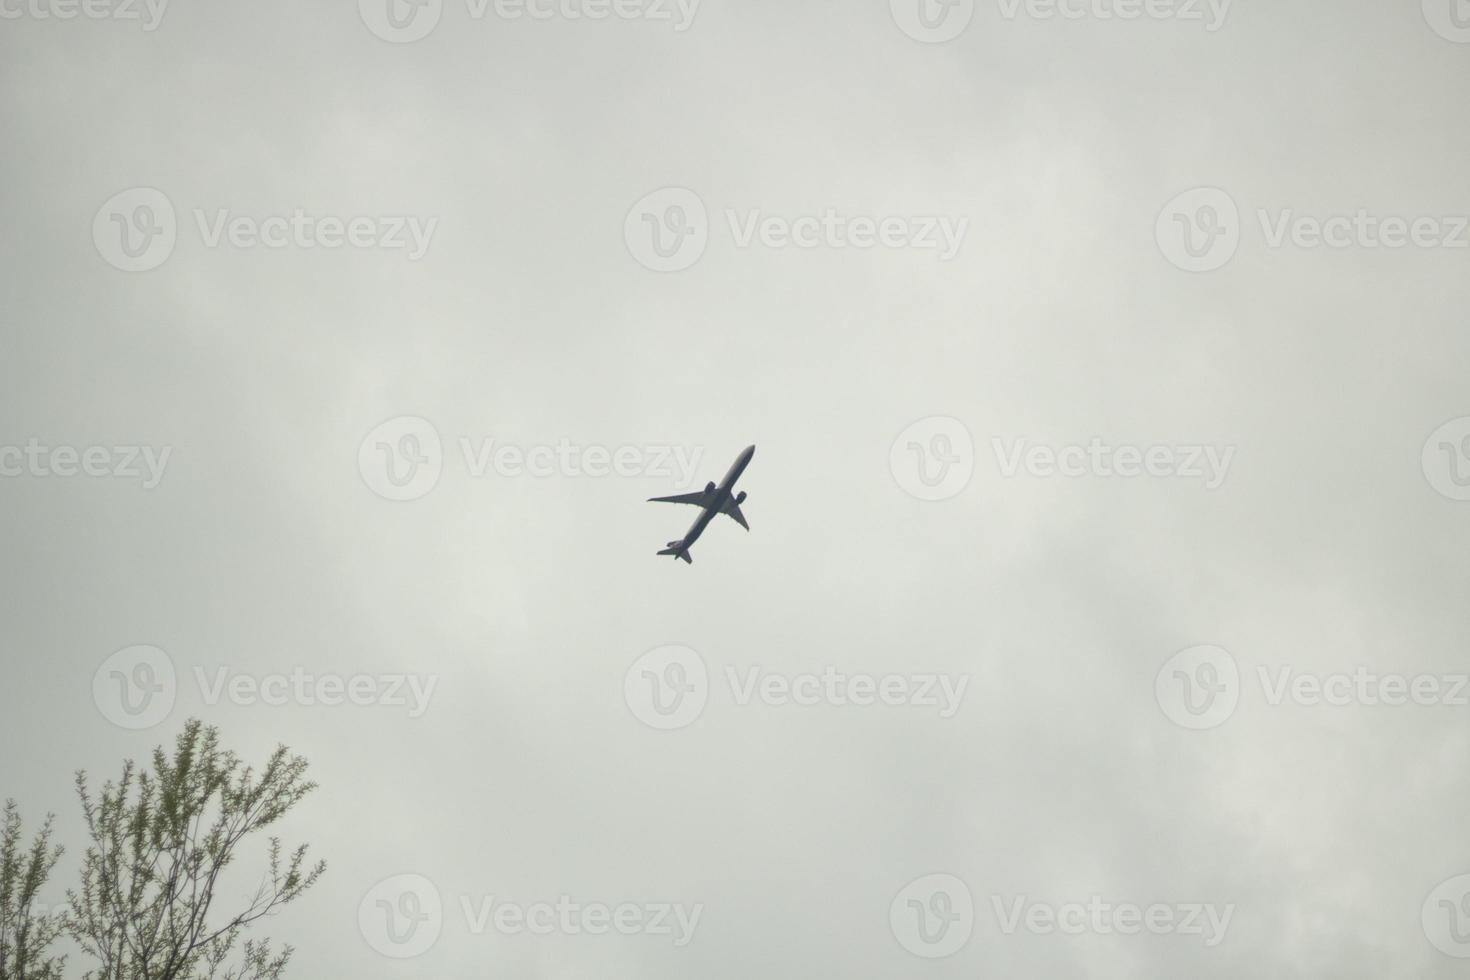 les détails du vol. petit avion dans le ciel gris. photo